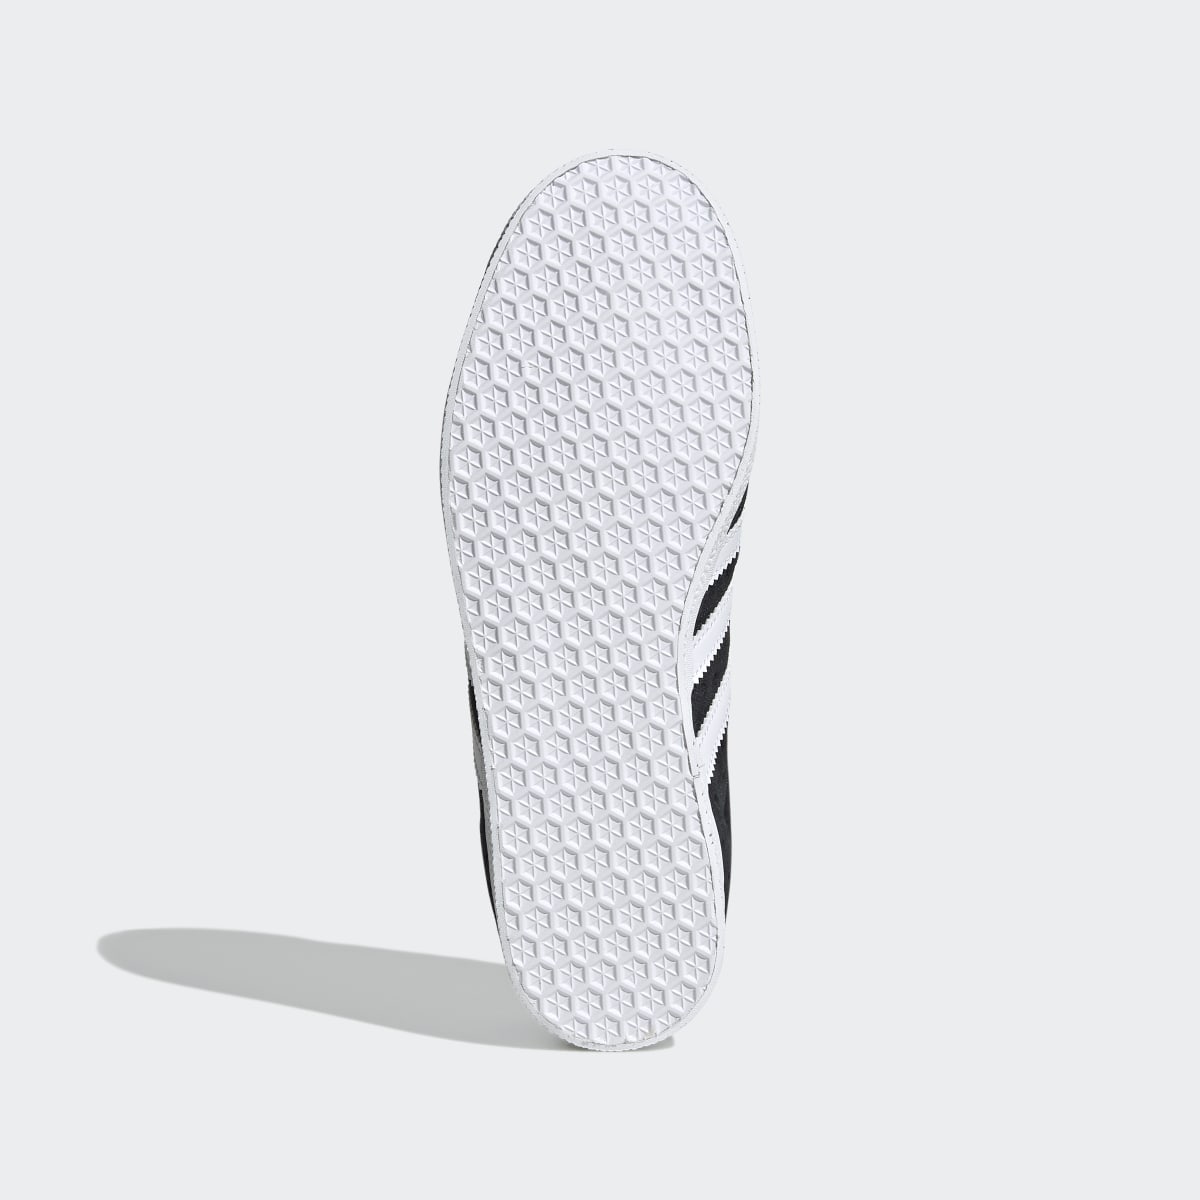 Adidas Gazelle Schuh. 4